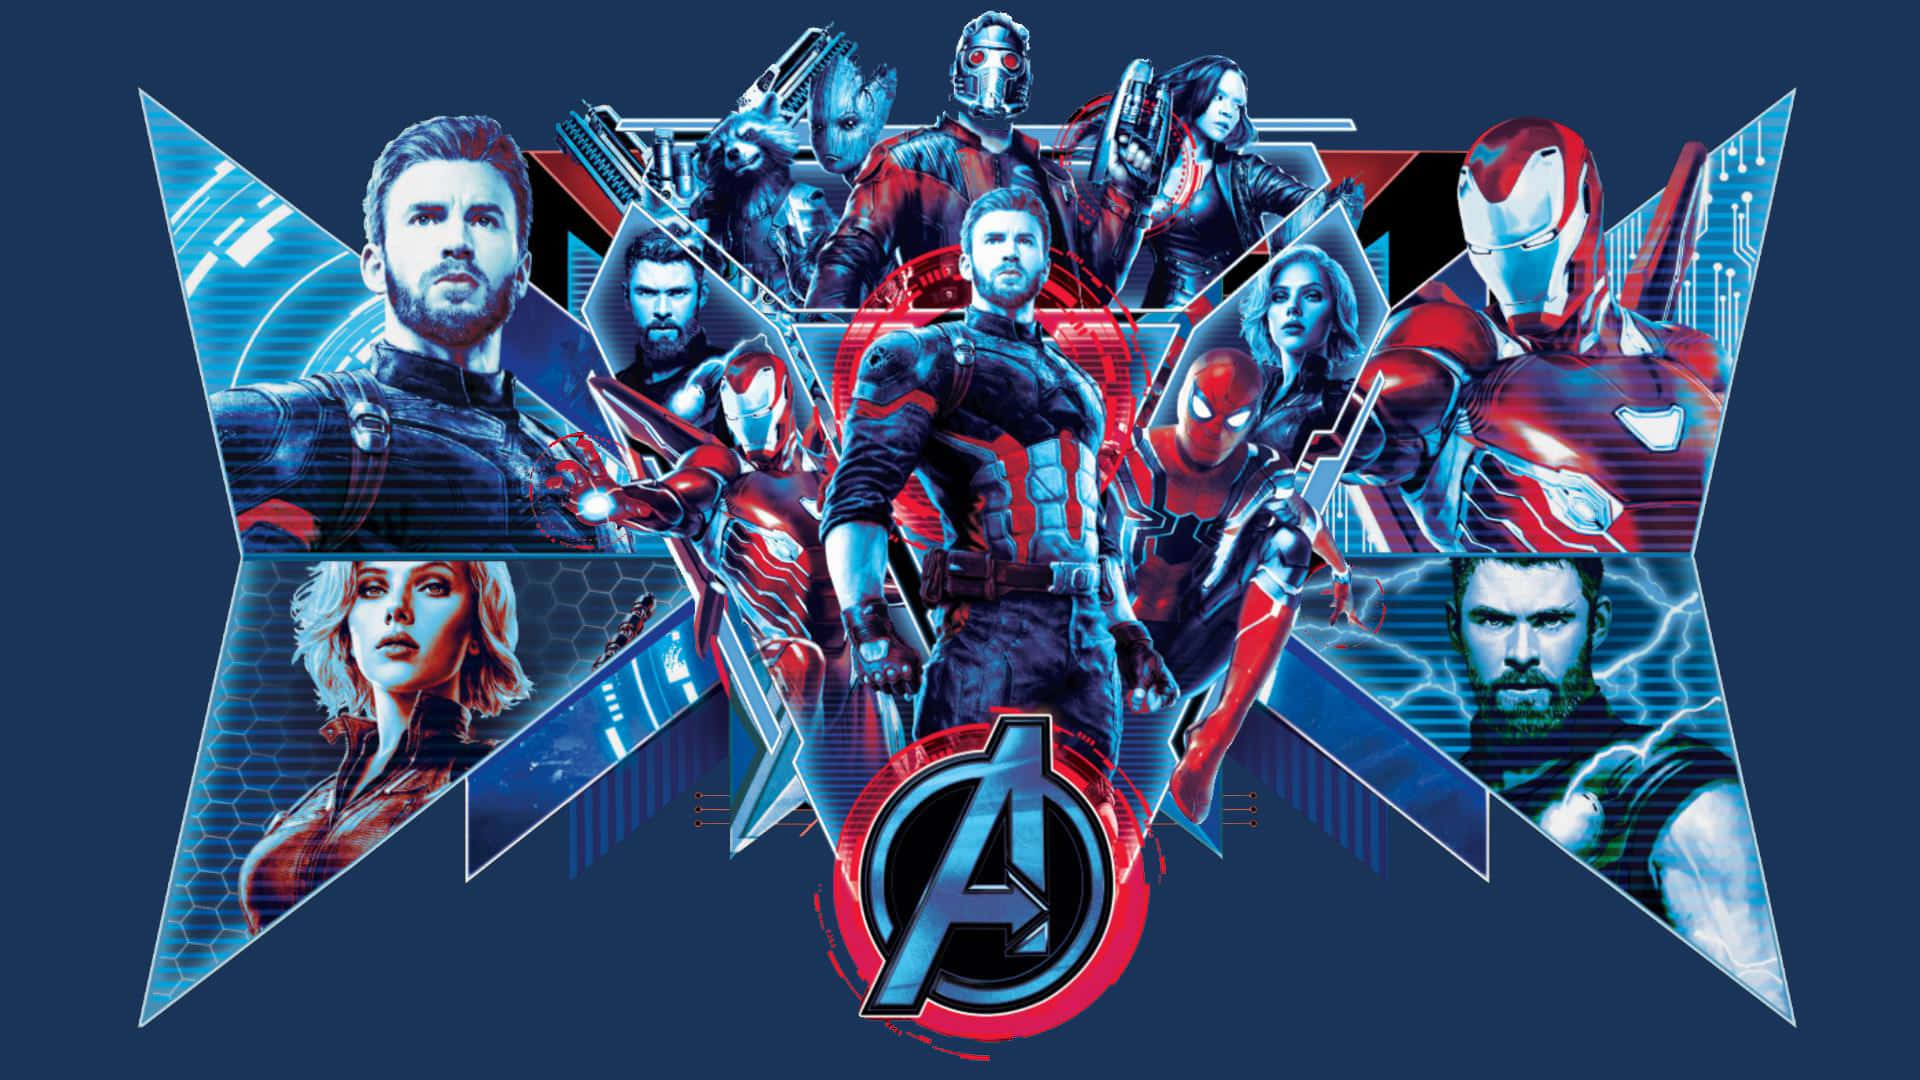 Fondode Pantalla De Los Avengers.